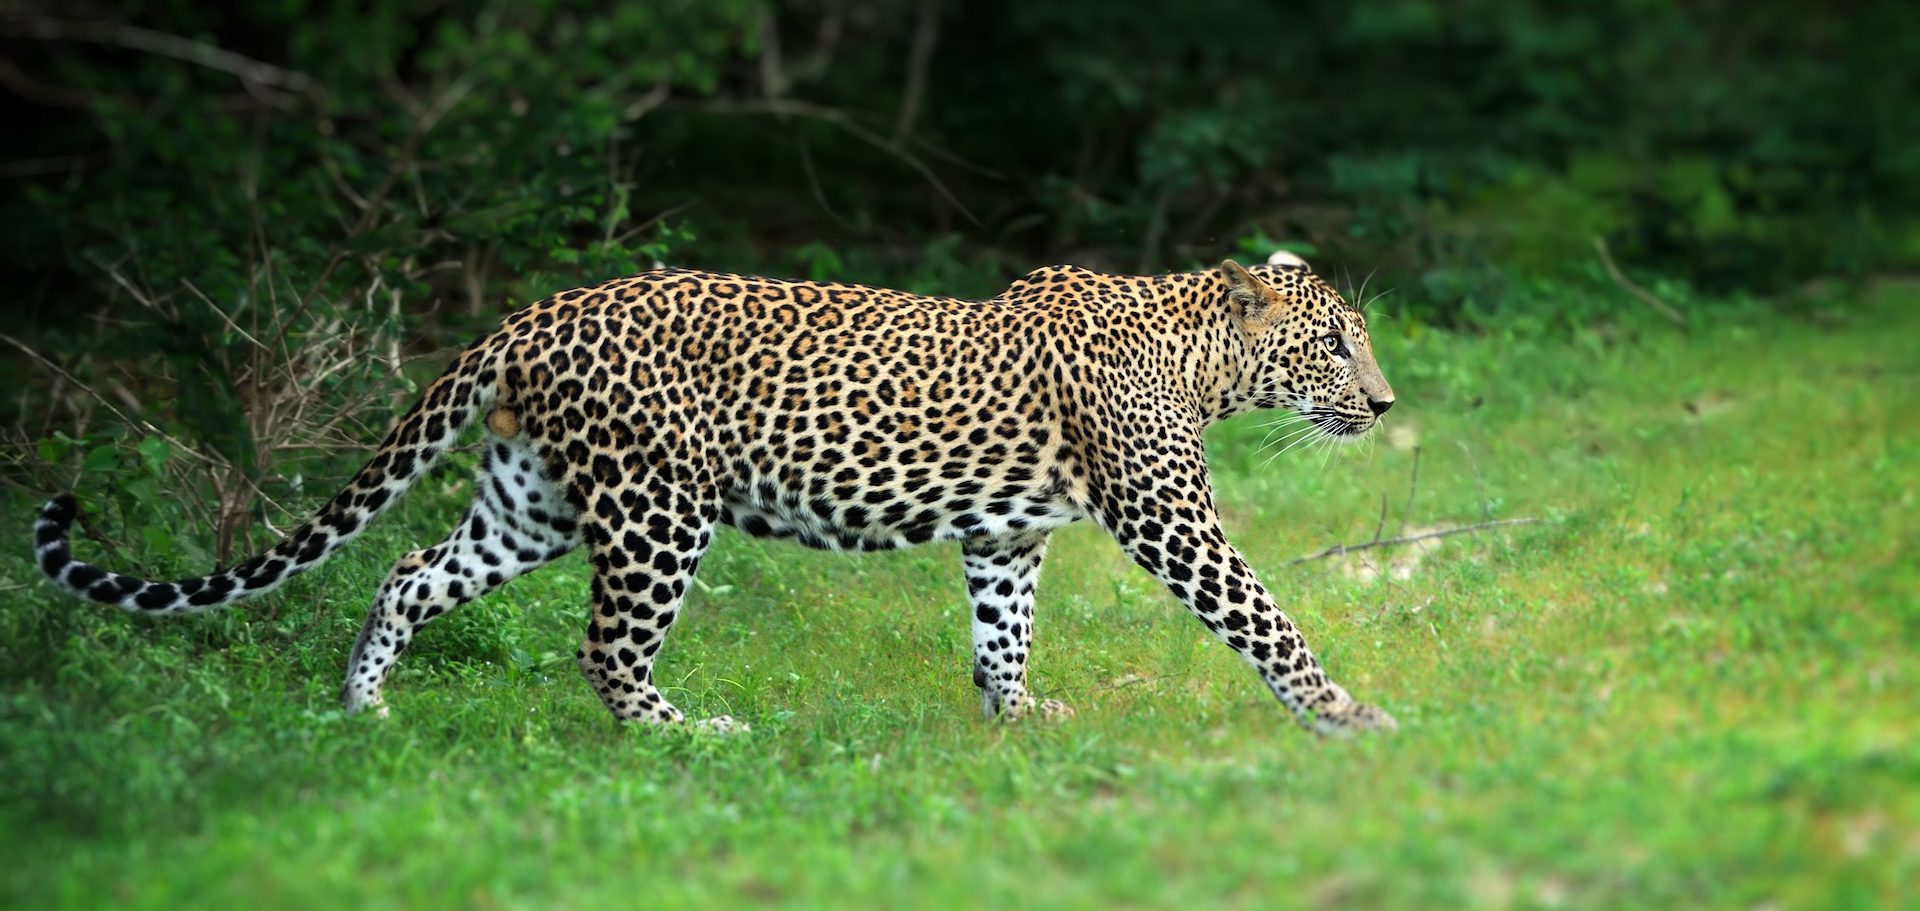 L'observation d'un léopard au Cameroun redonne de l'espoir aux protecteurs de l'environnement